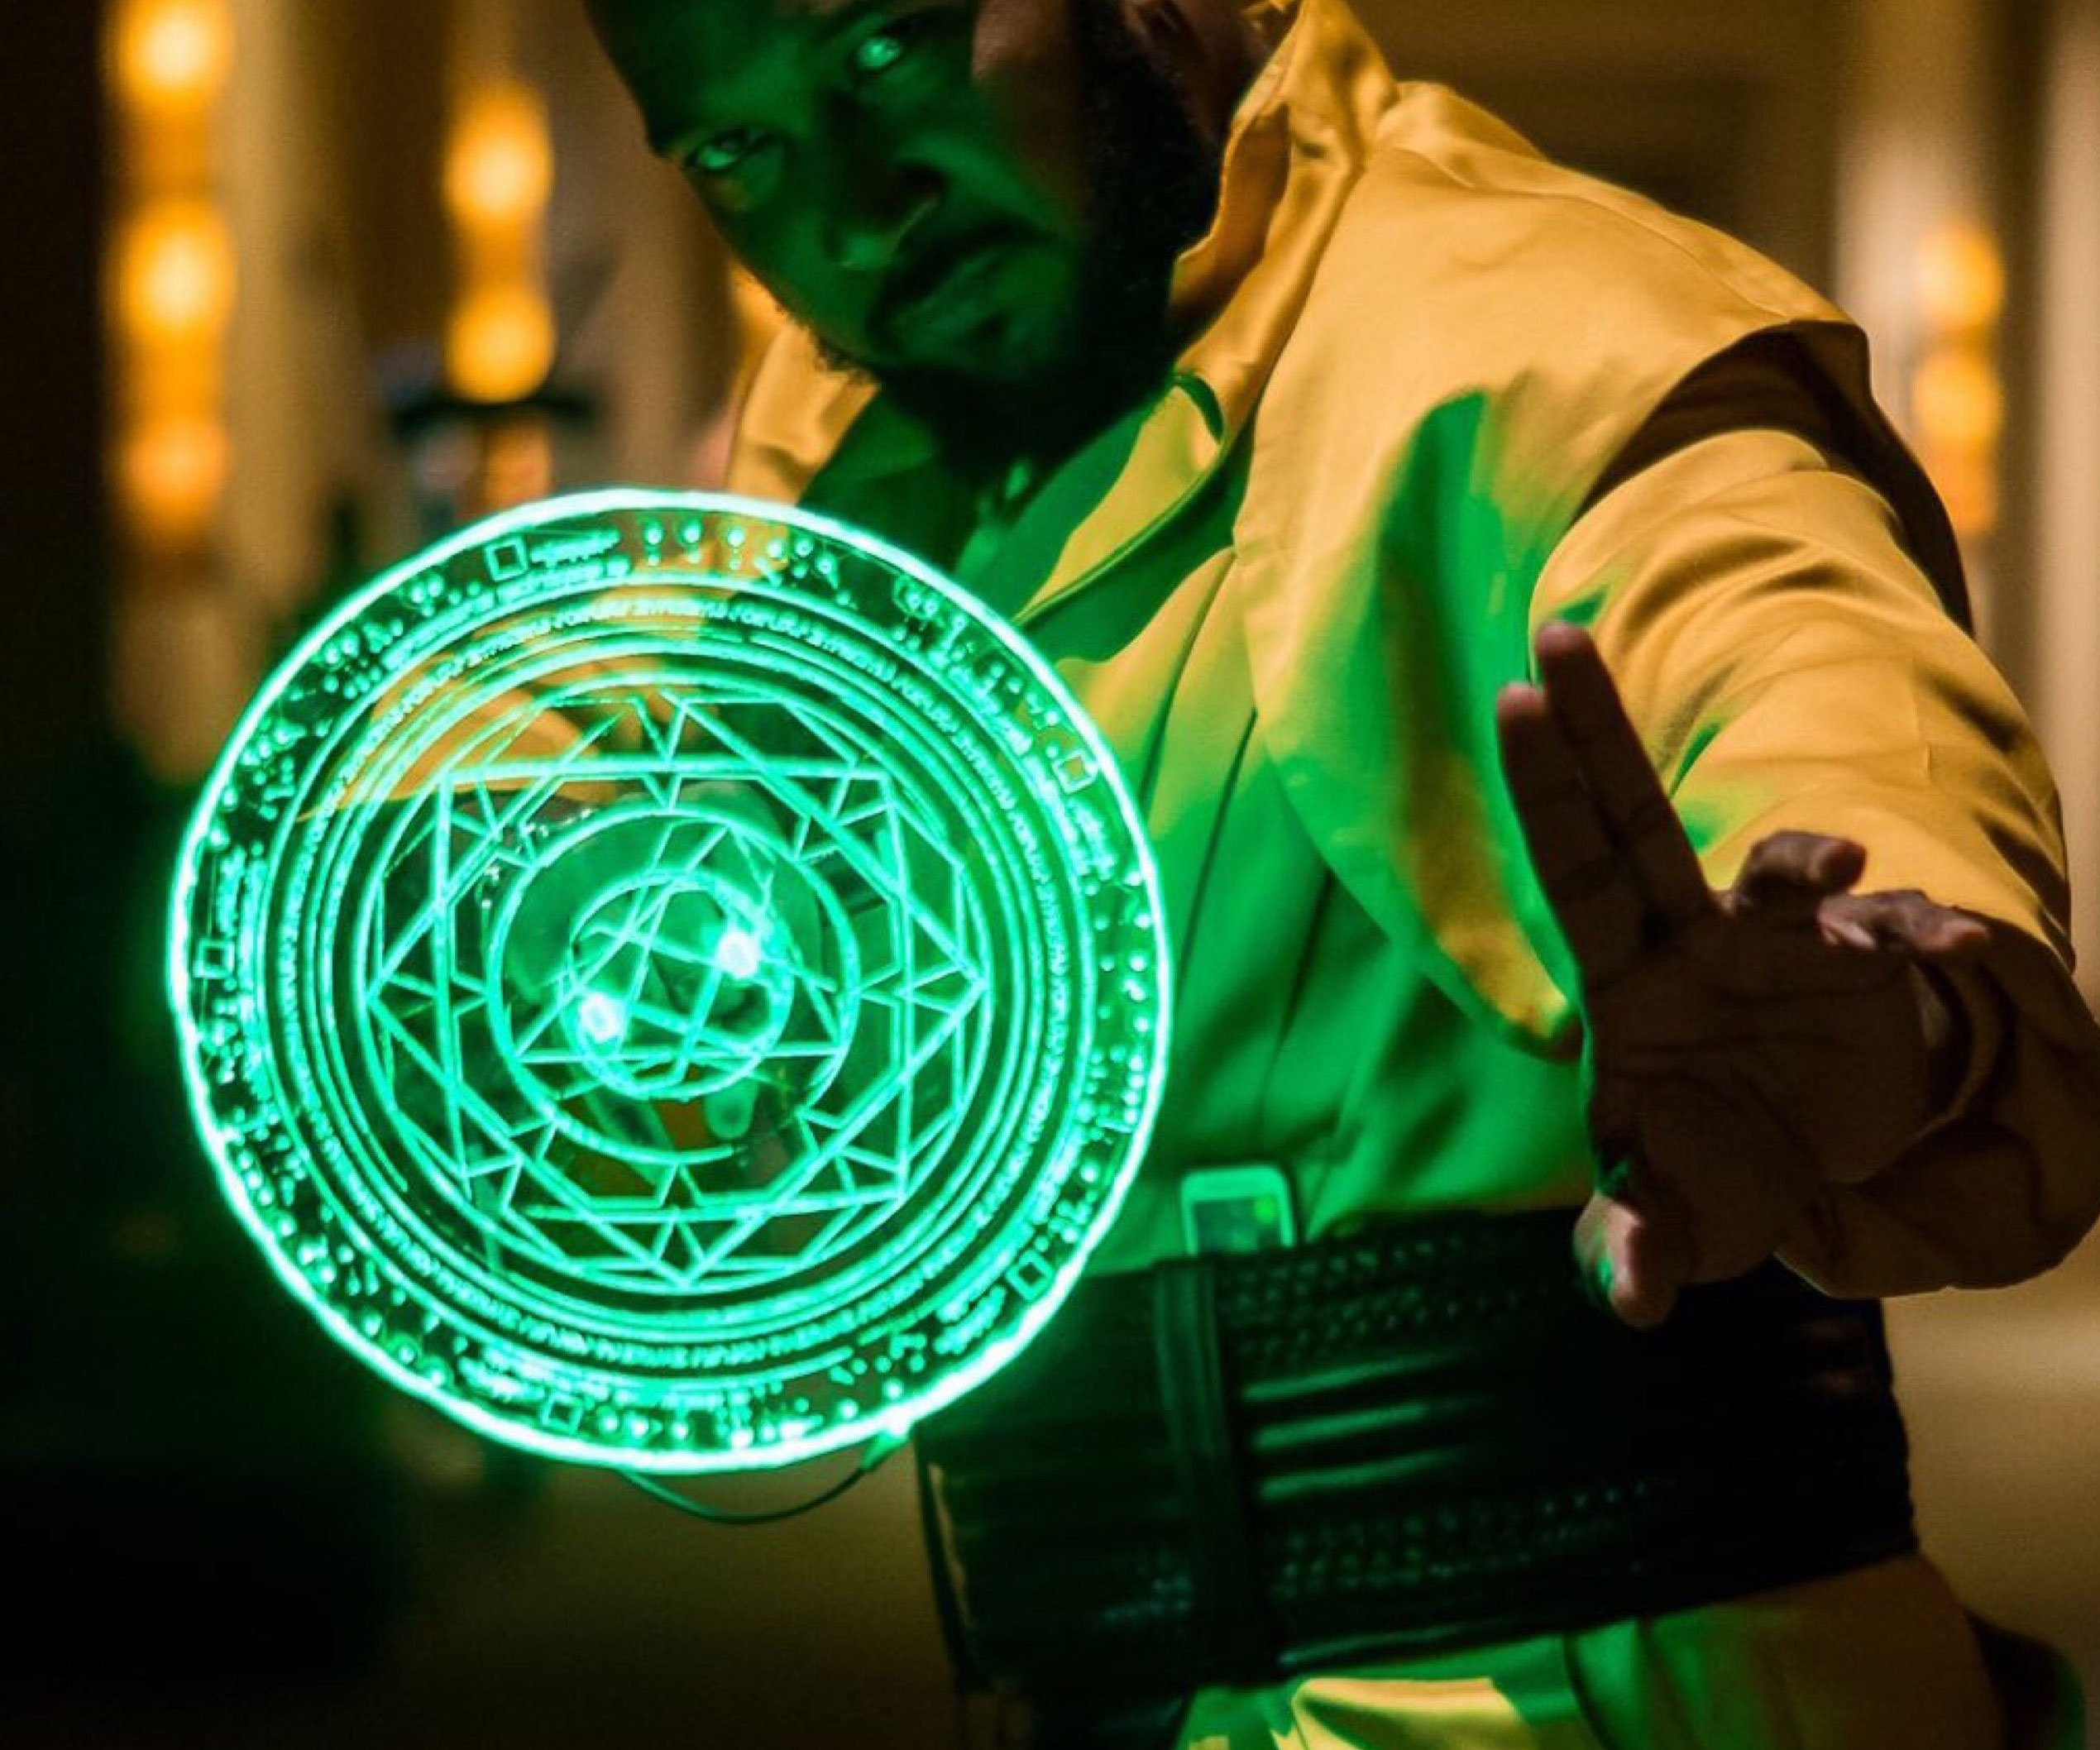 Doctor Strange Light Up LED Spell Disc